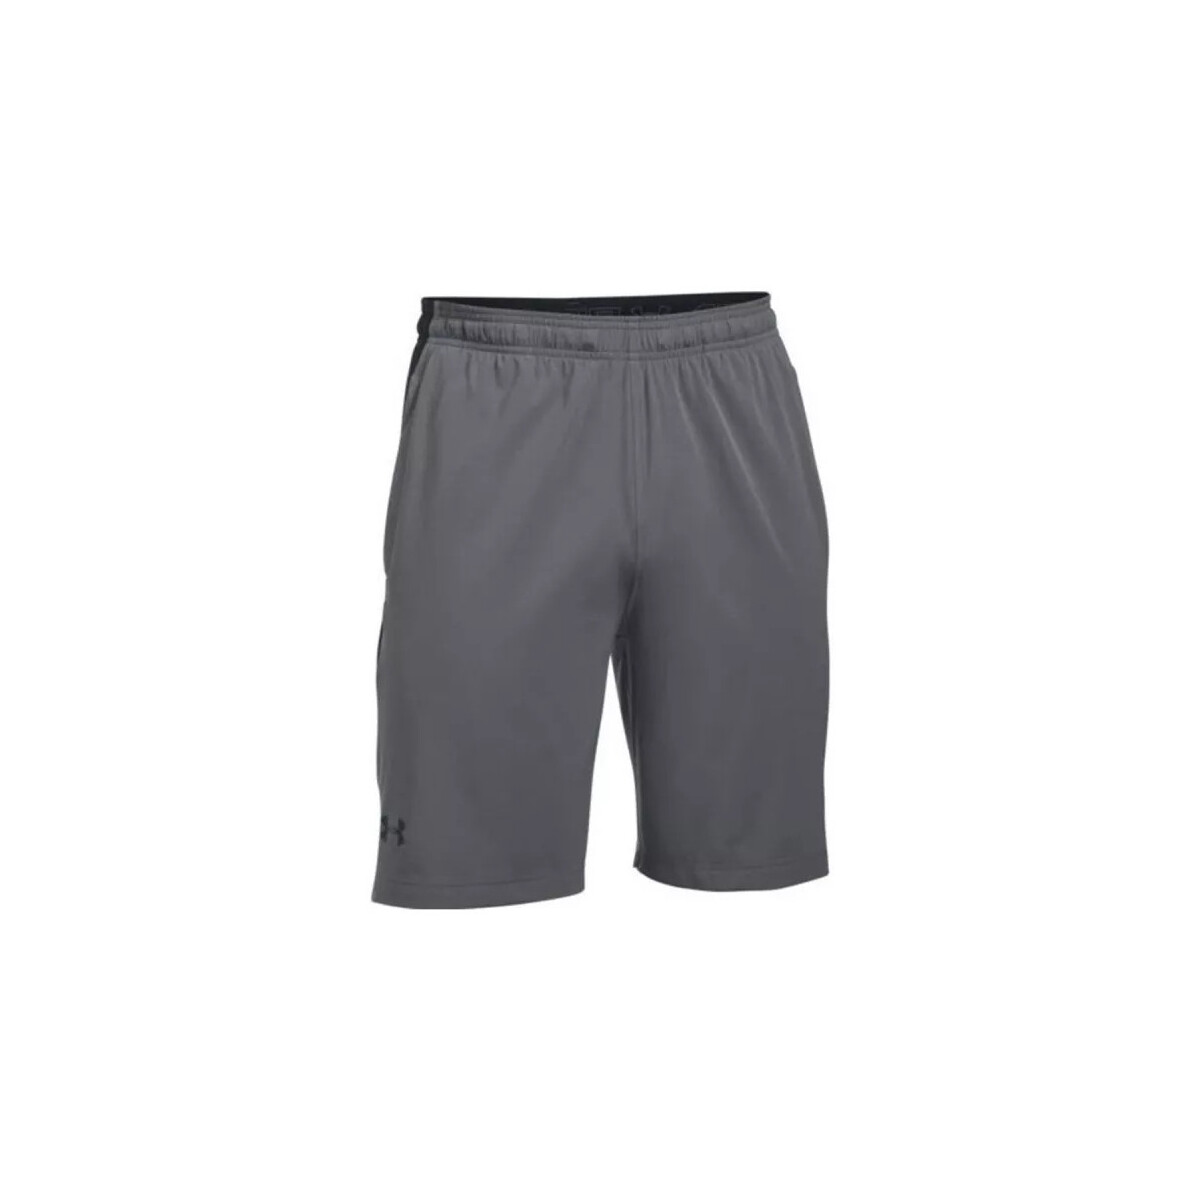 Vêtements Homme Shorts / Bermudas Under Armour Short  Supervent Woven Gris